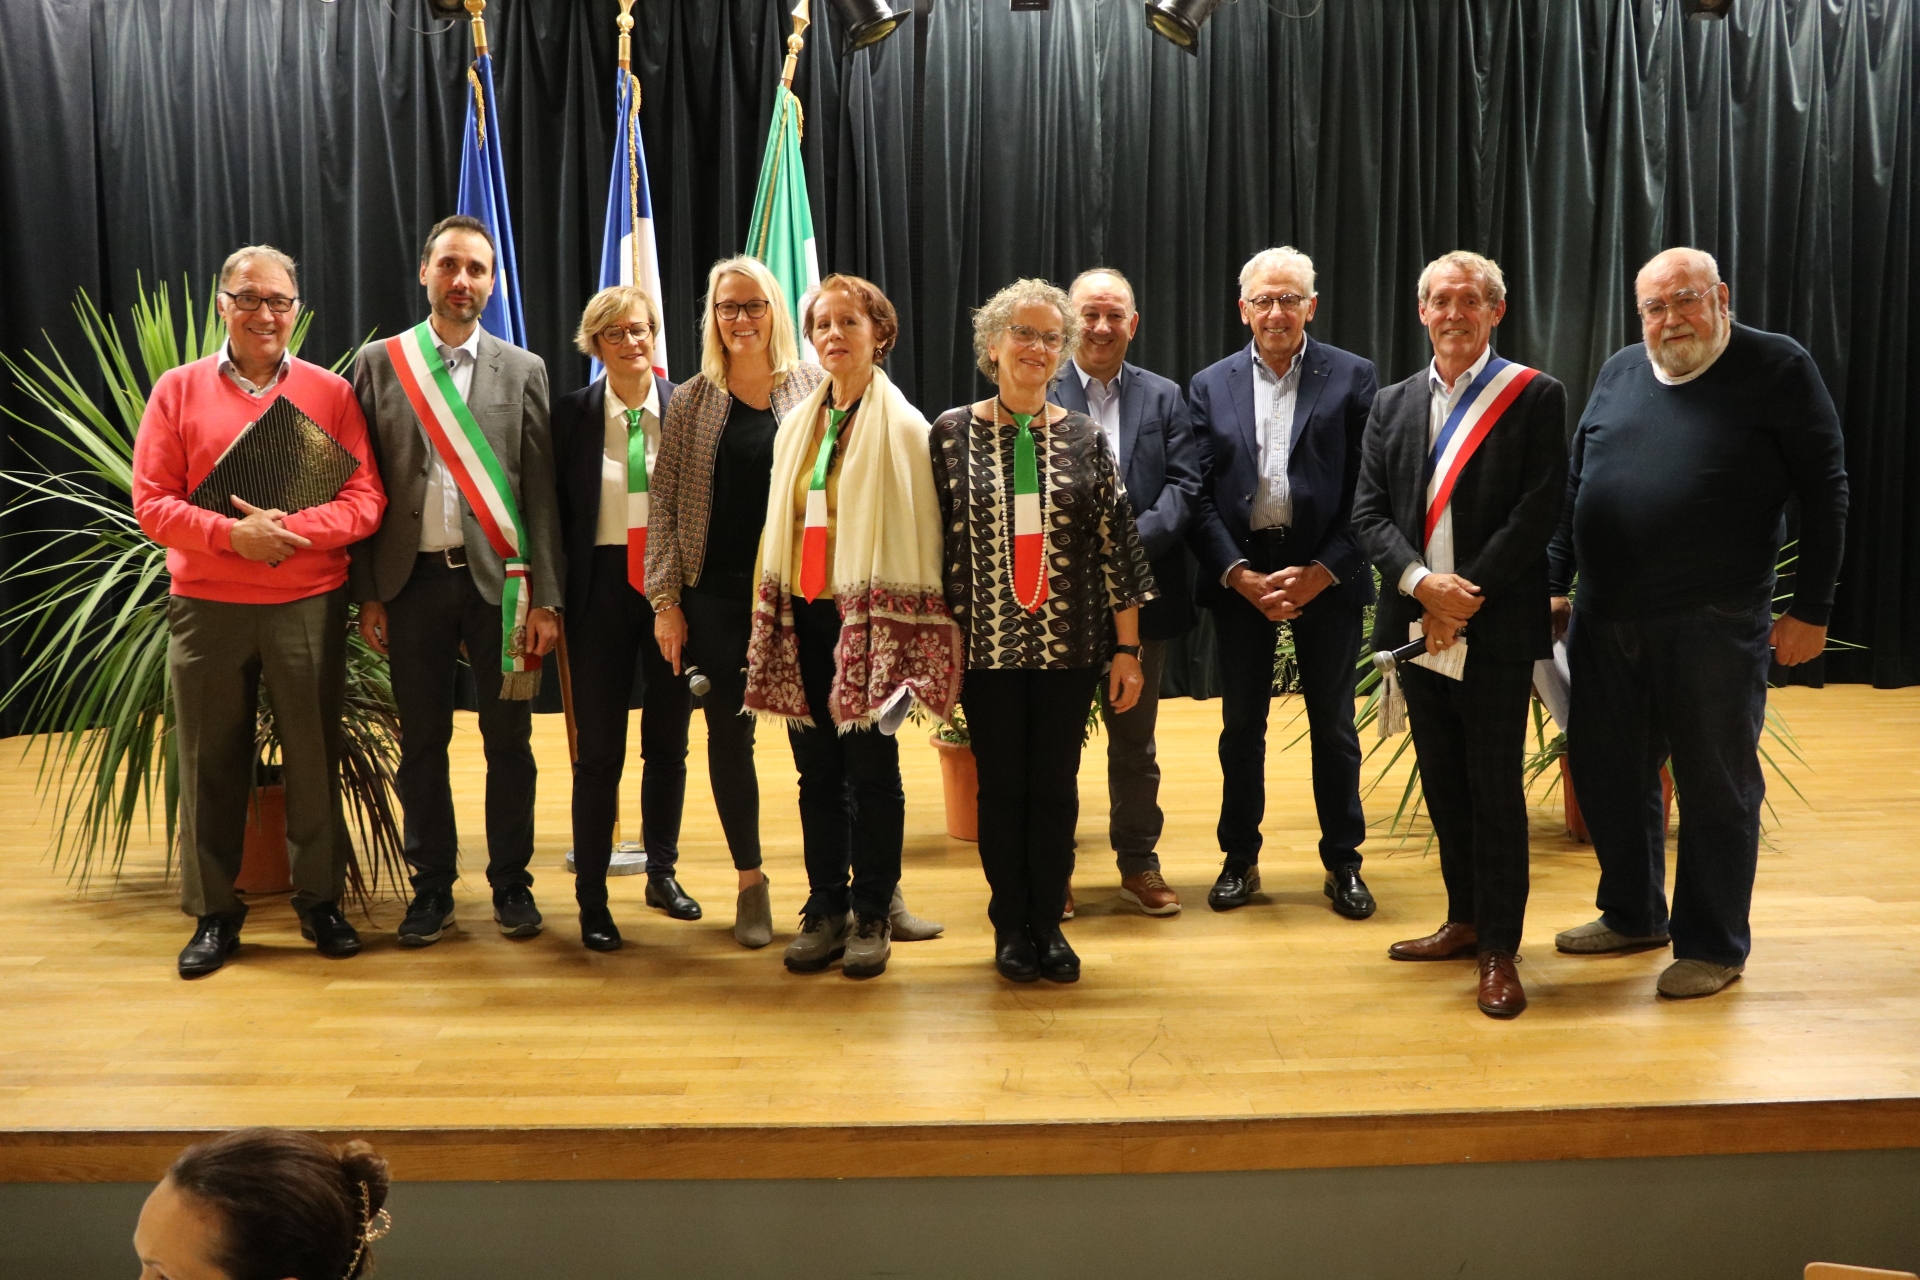 Italiani e francesi si incontrano a Fontaines per celebrare il 25° anniversario del duo Fontaines/Basiano.